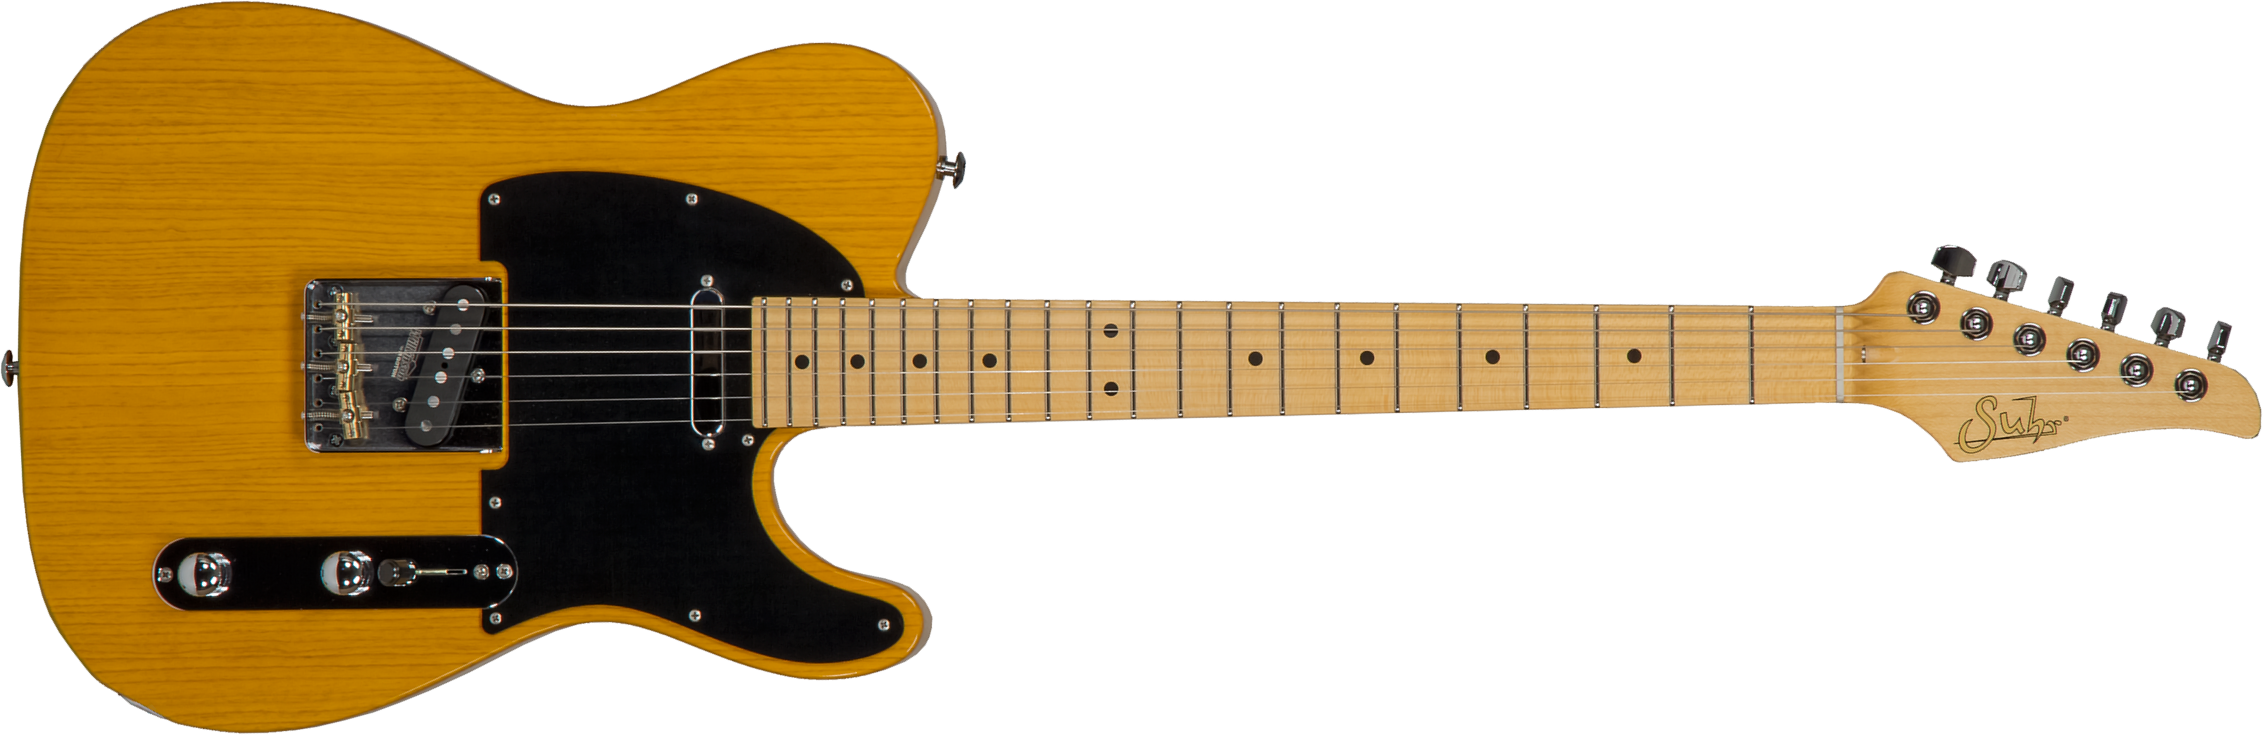 Suhr Classic T Antique 01-cta-0026 2s  Ht Mn #70402 - Light Aging Trans Butterscotch - Guitare Électrique Forme Tel - Main picture